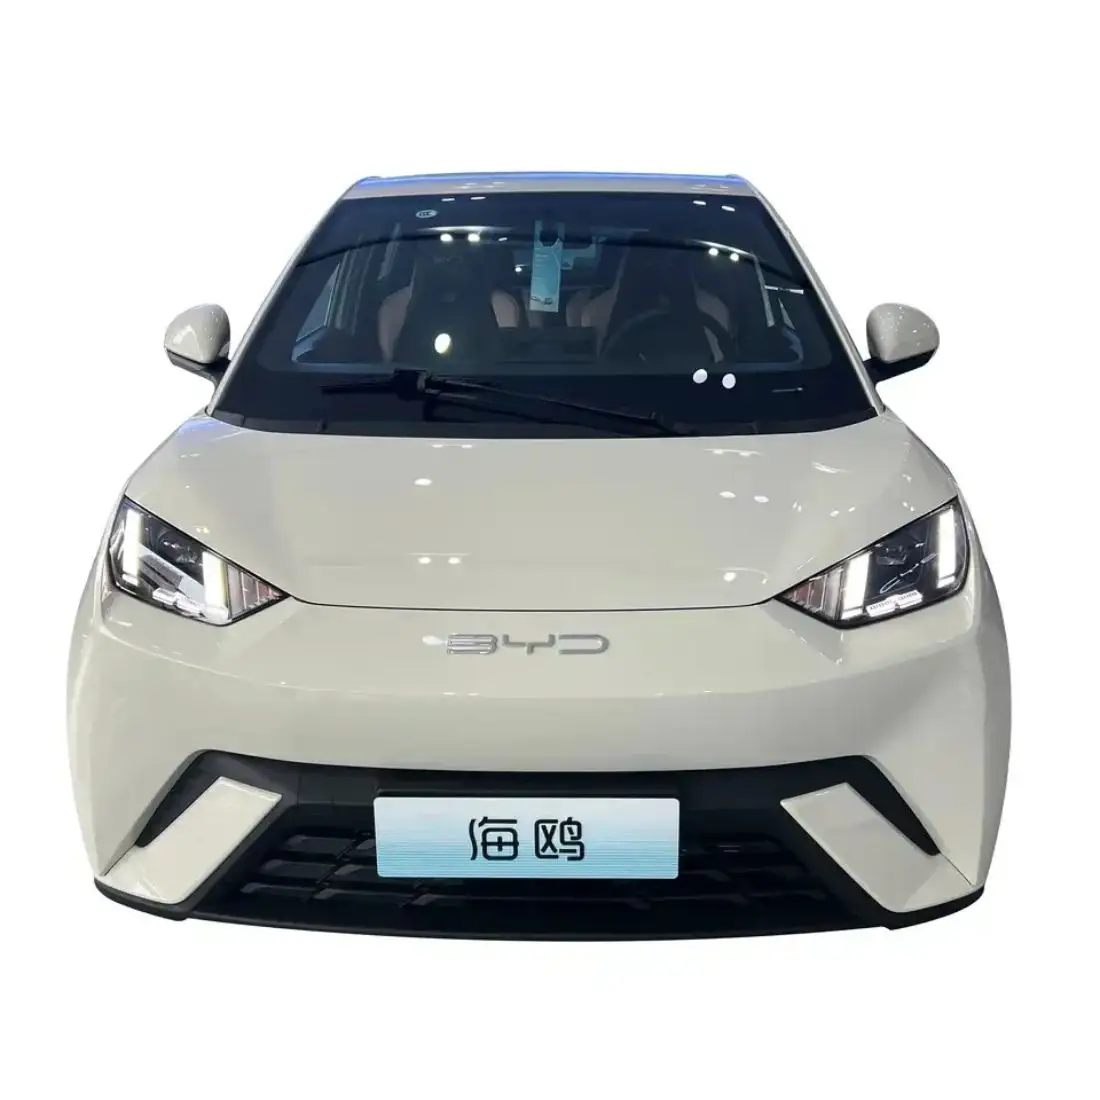 इलेक्ट्रिक कार सबसे सस्ती चीनी बाइड सीगल युआन प्लस सॉन्ग प्लस टैंग व कार पेट्रोल कार चीन मुक्त